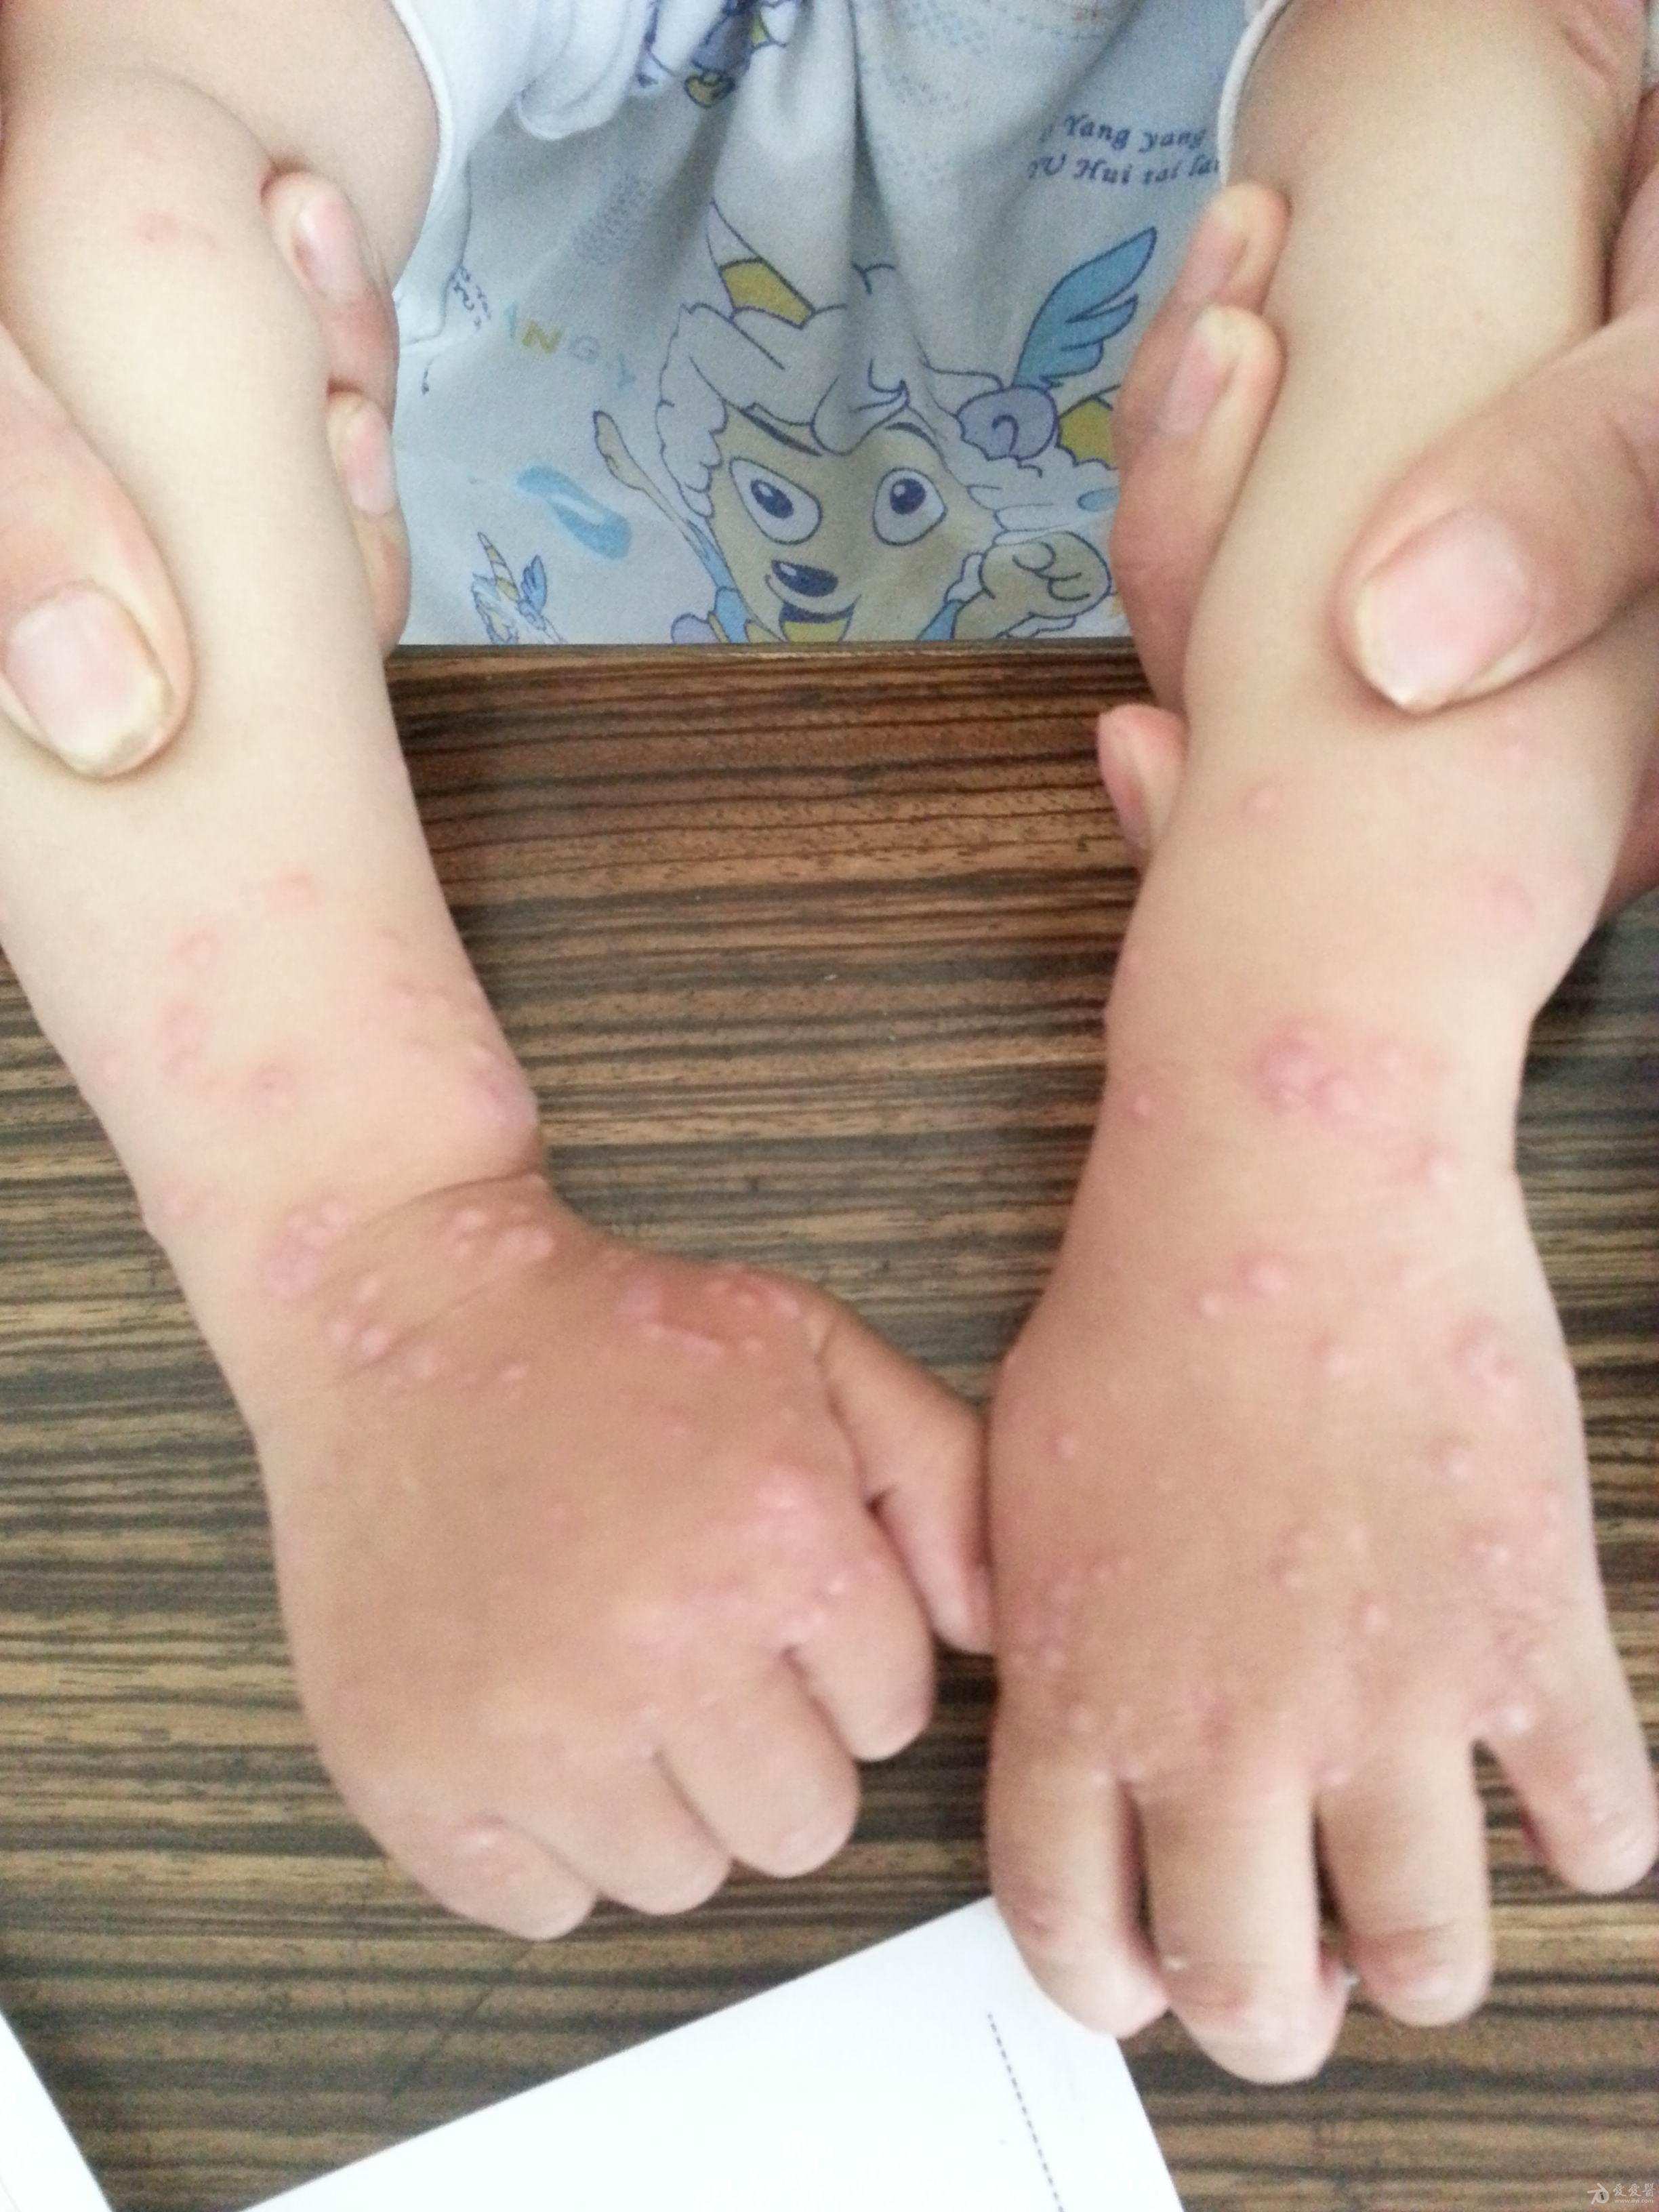 儿童皮炎早期症状图片图片